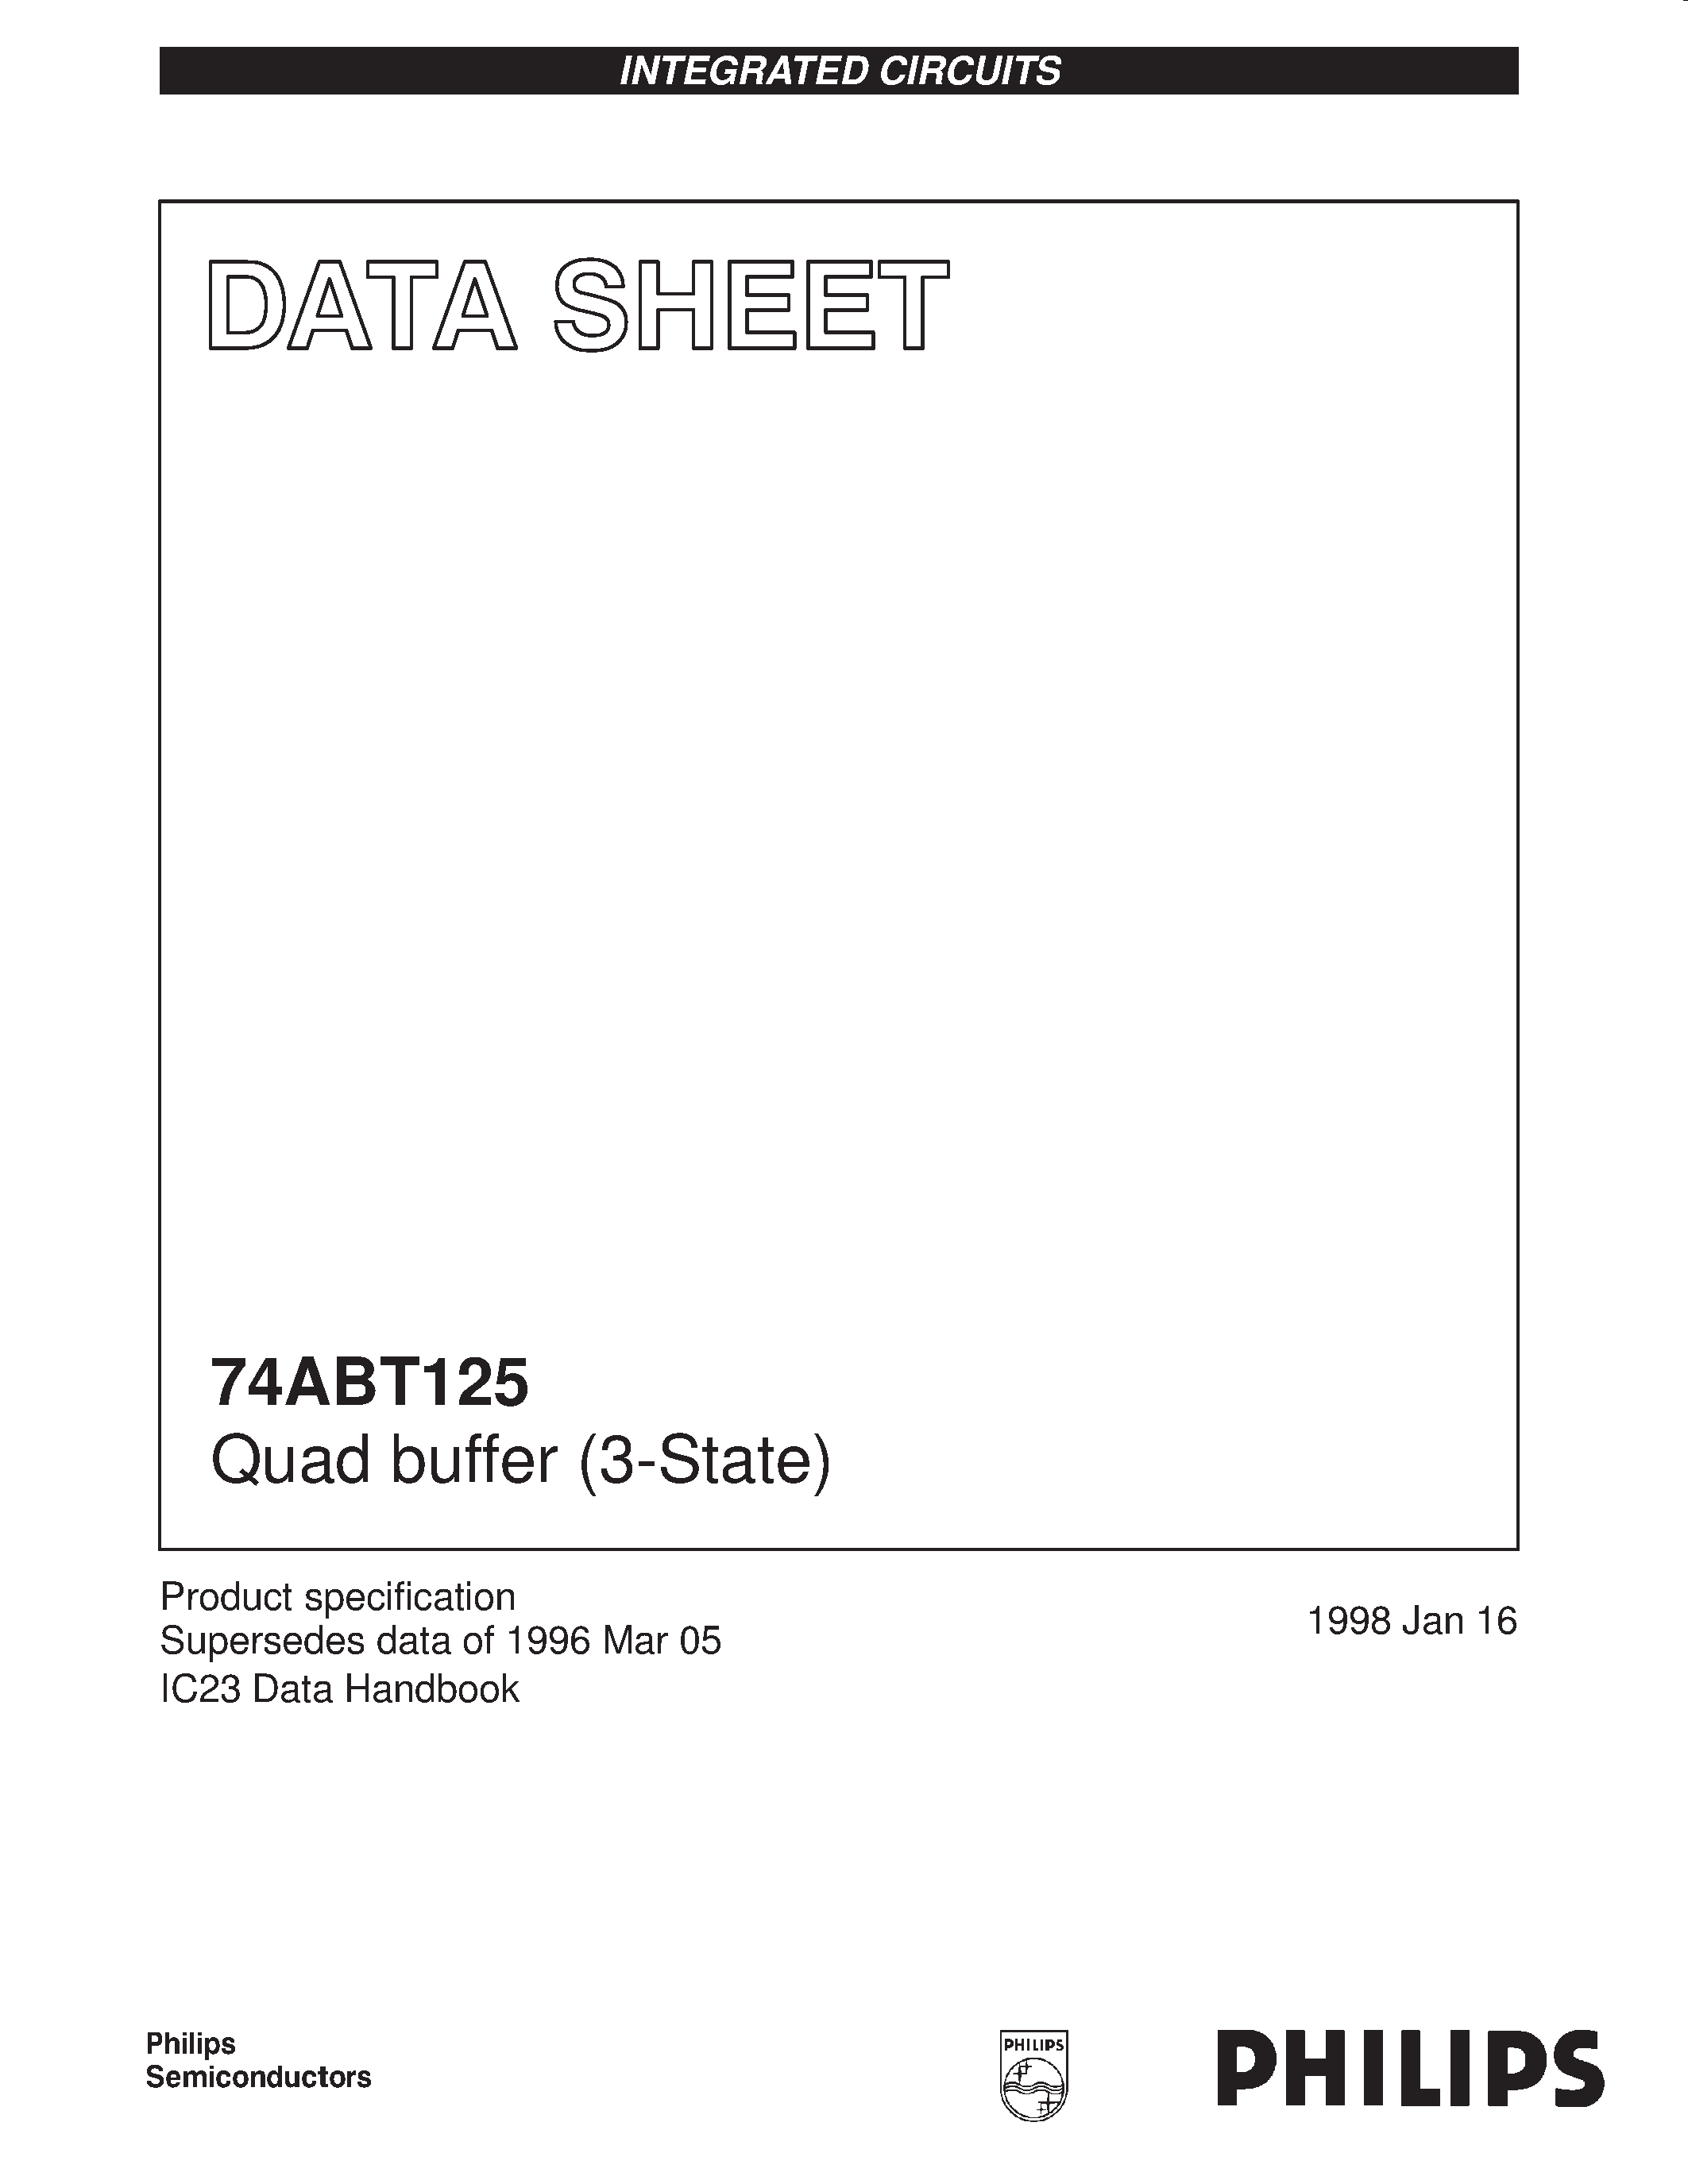 Даташит 74ABT125D - Quad buffer 3-State страница 1